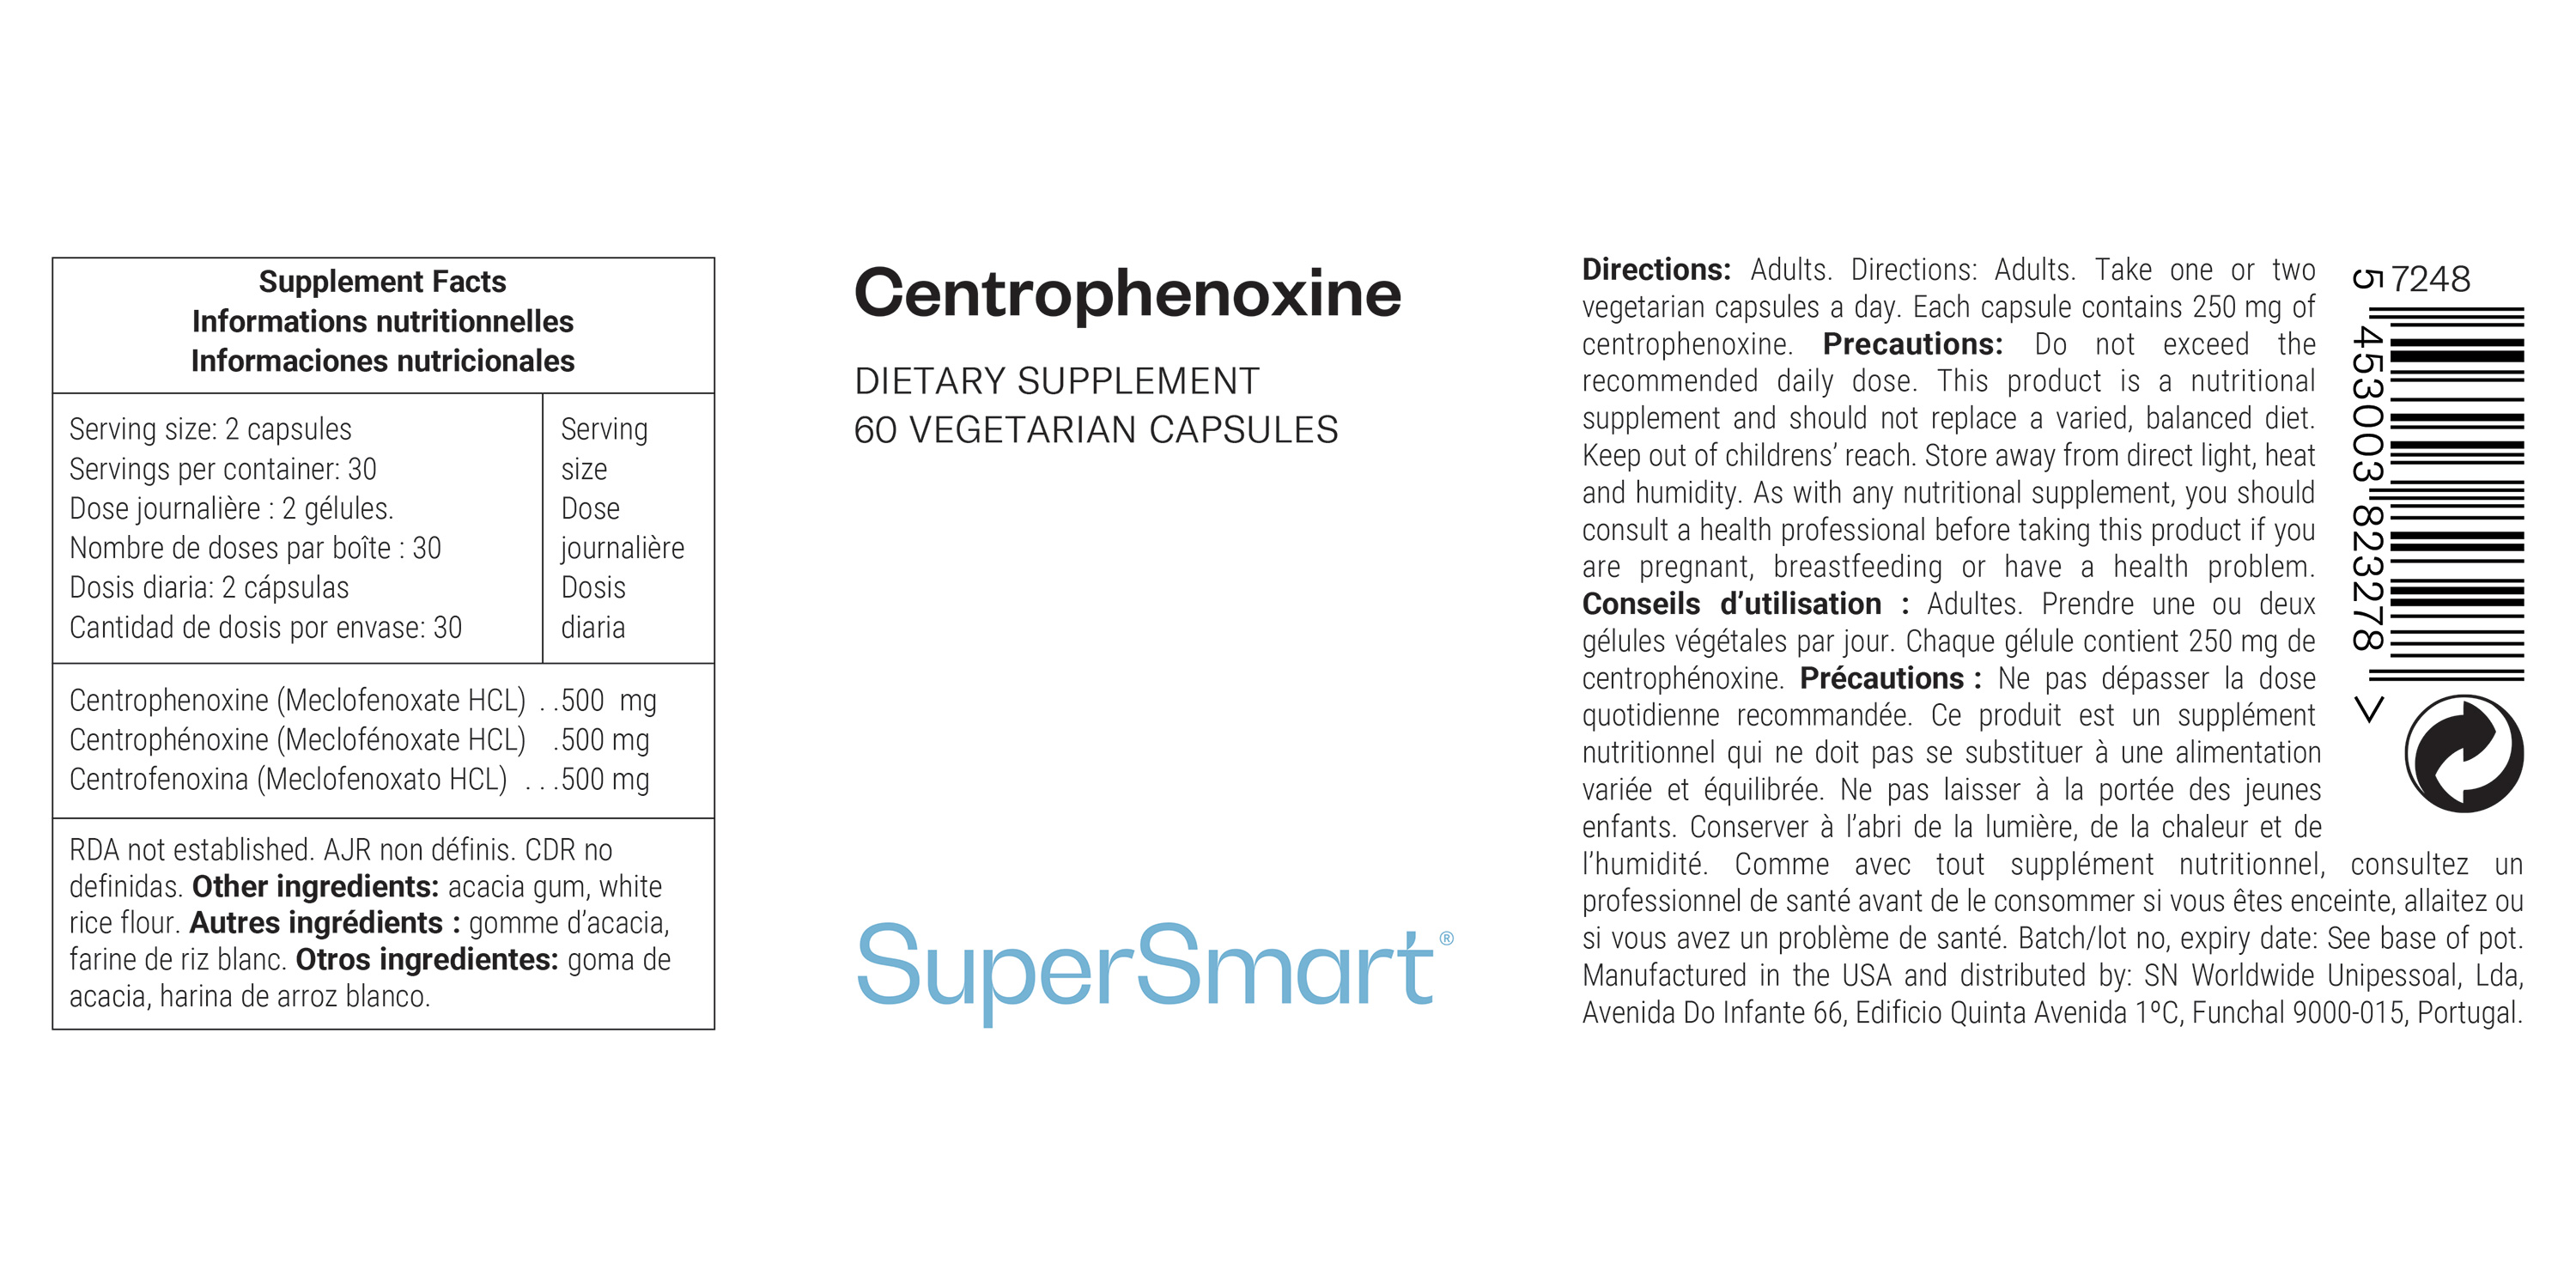 Complemento de Centrofenoxina (Meclofenoxato HCL)